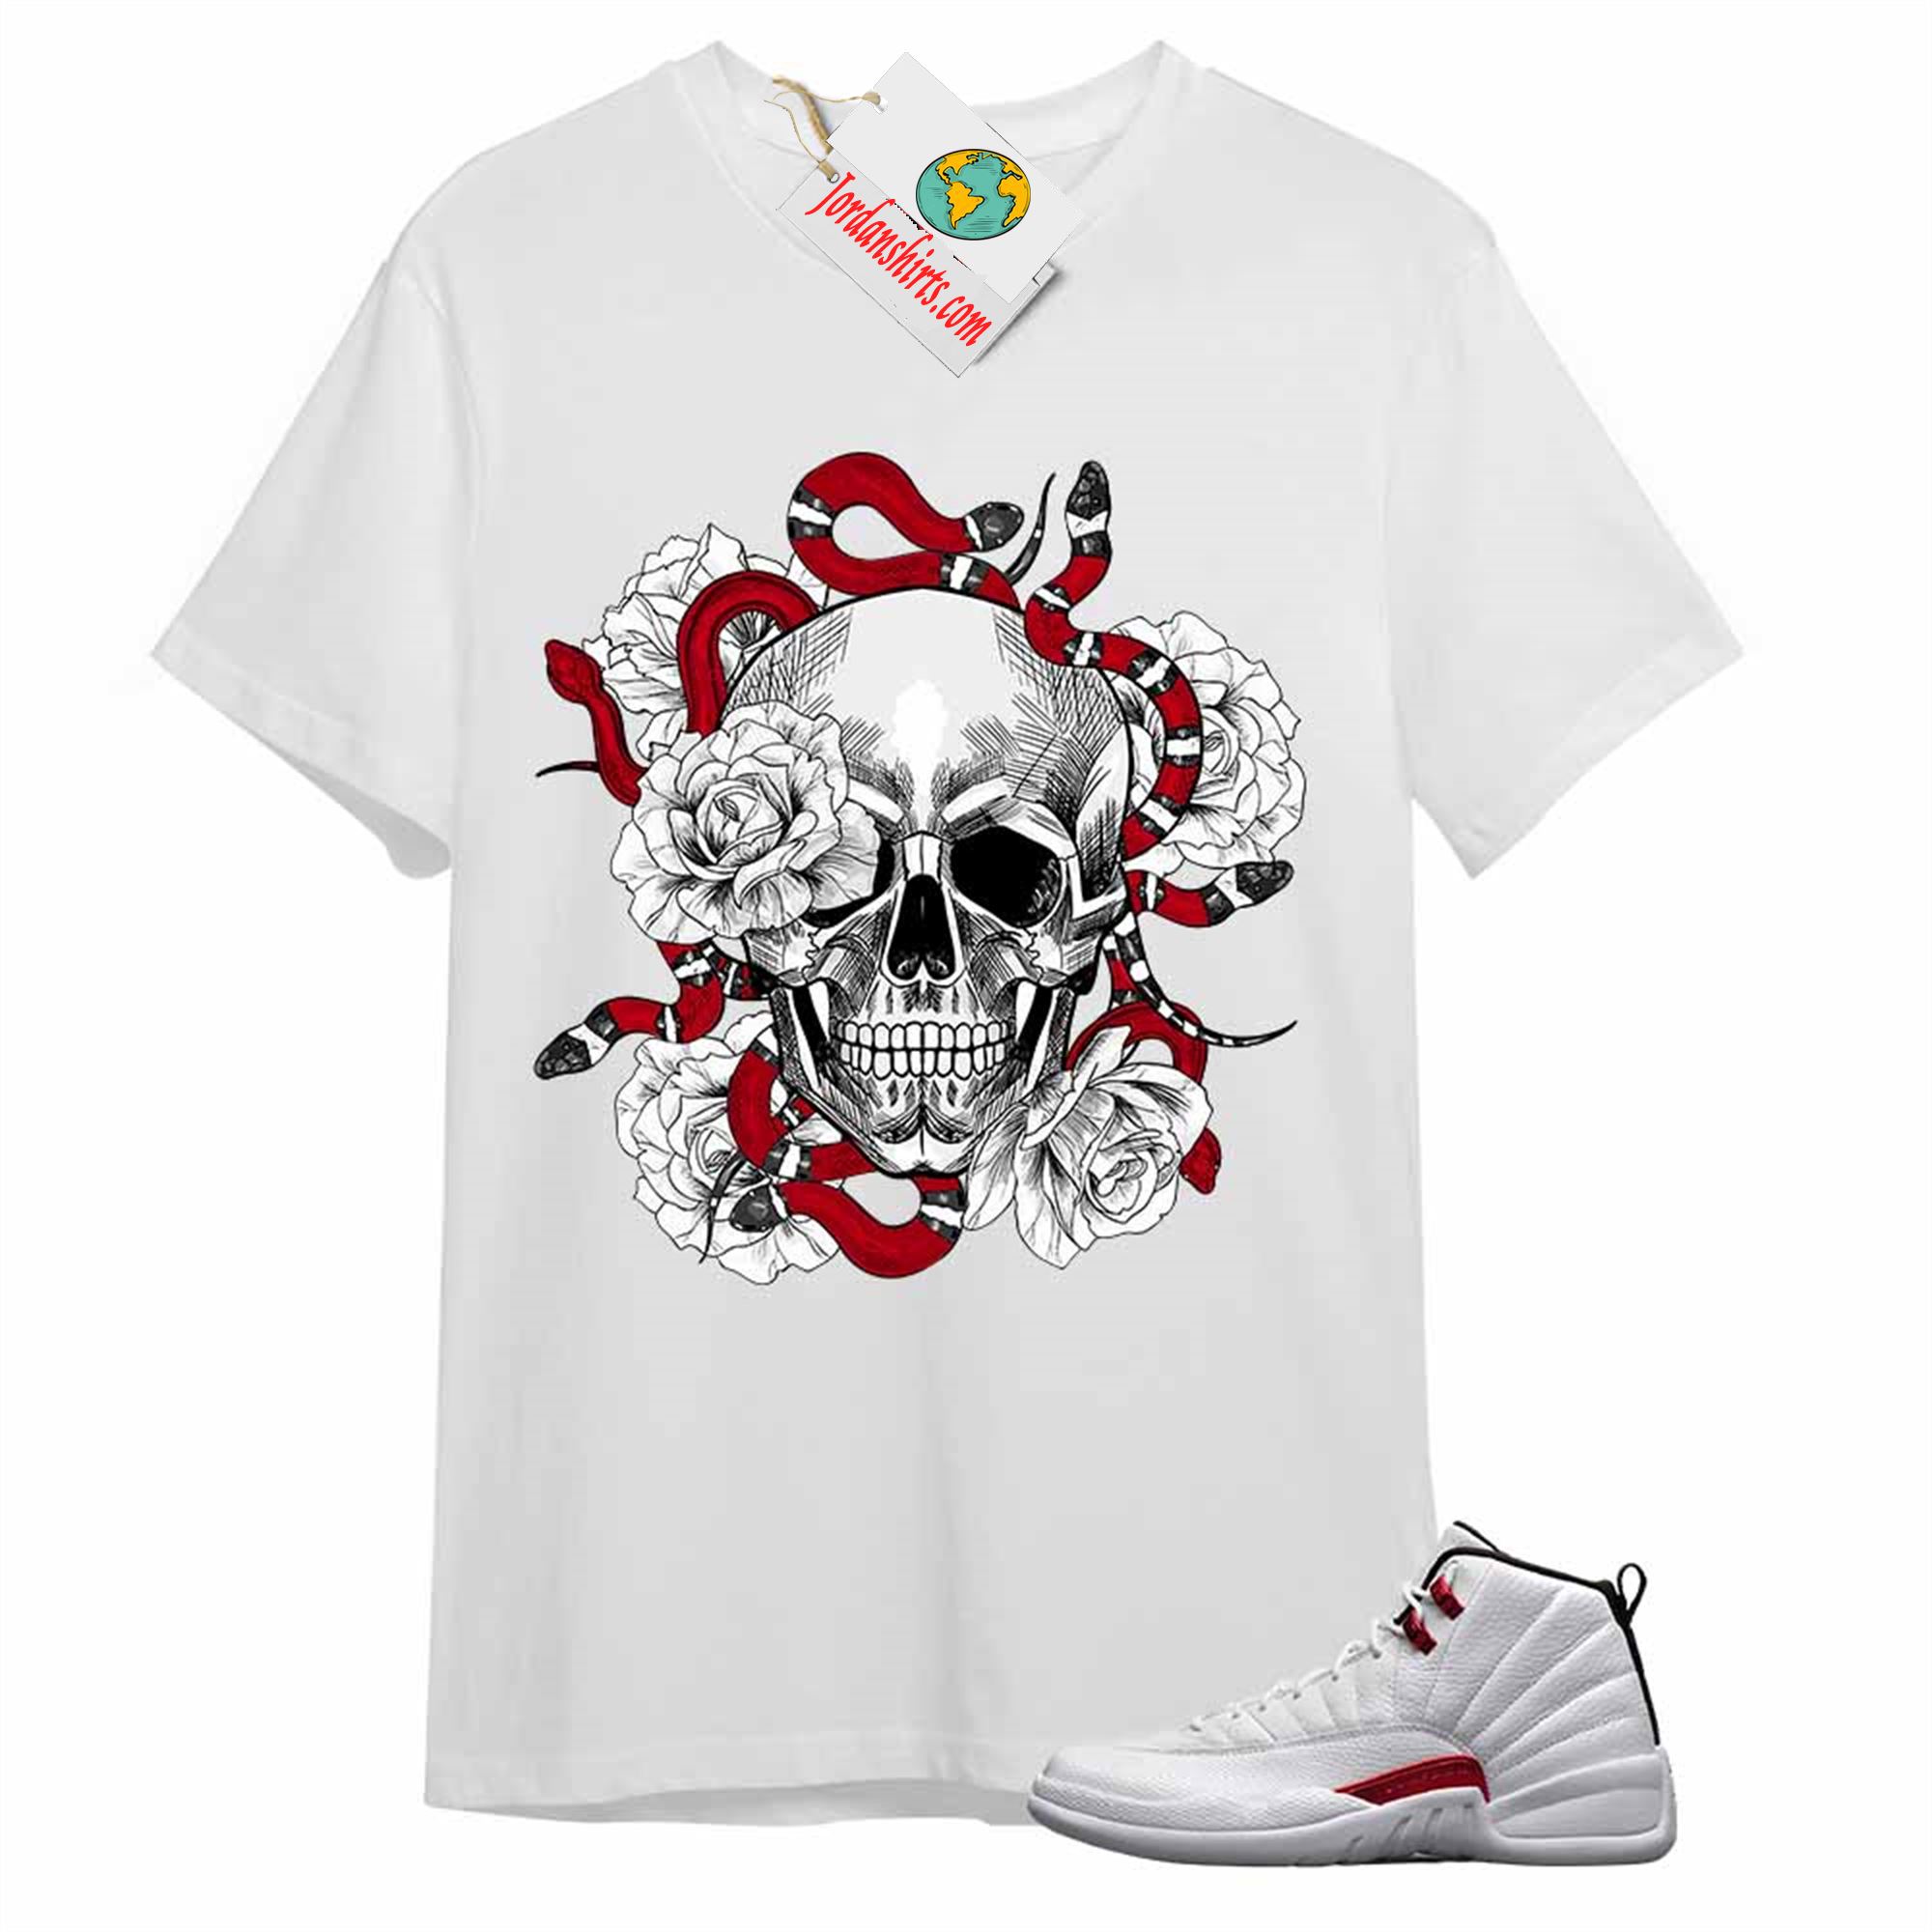 Jordan 12 Shirt, Snake Skull Rose White T-shirt Air Jordan 12 Twist 12s Size Up To 5xl